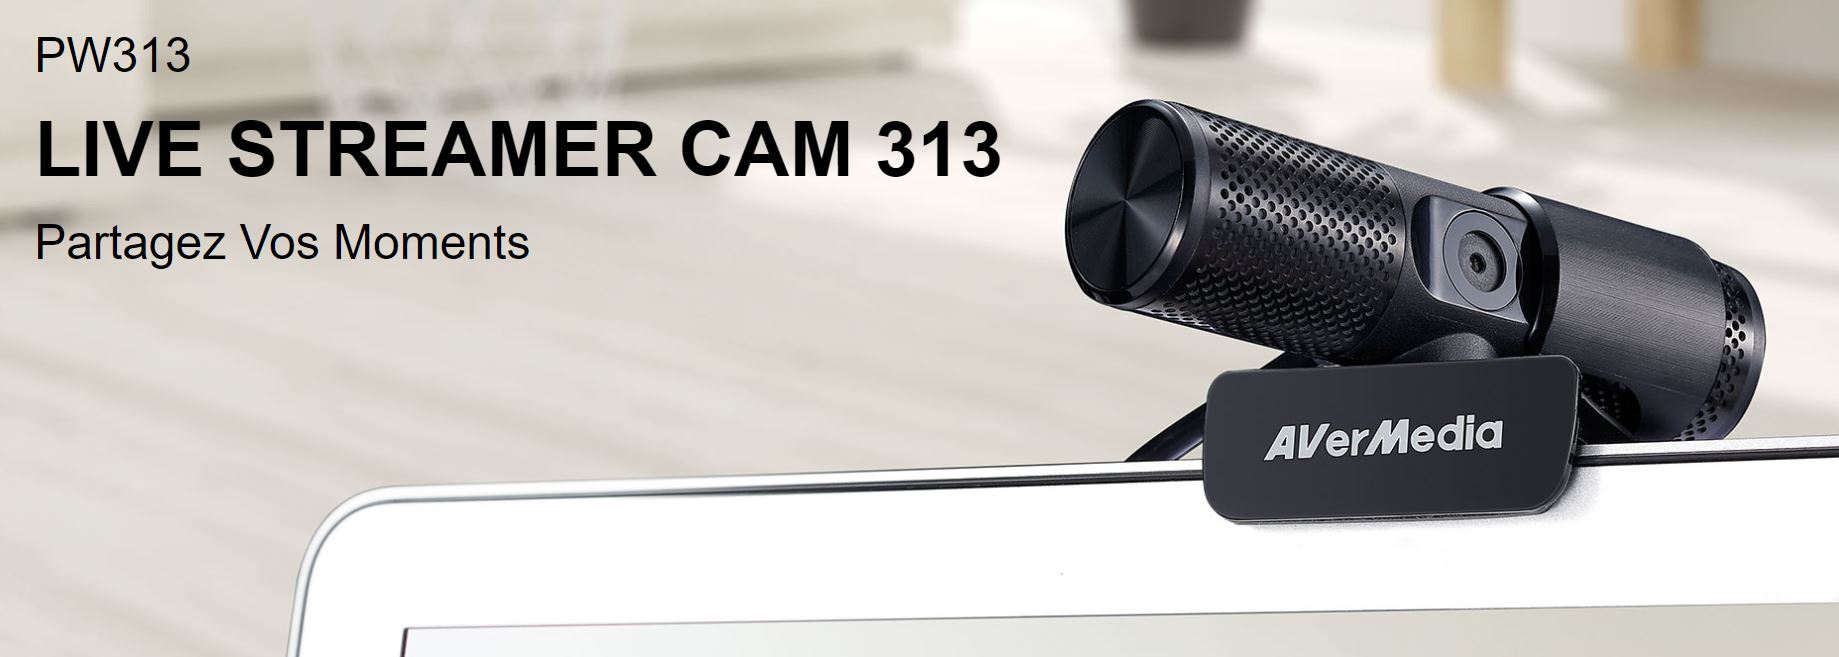 webcam AverMedia cam313 - 2